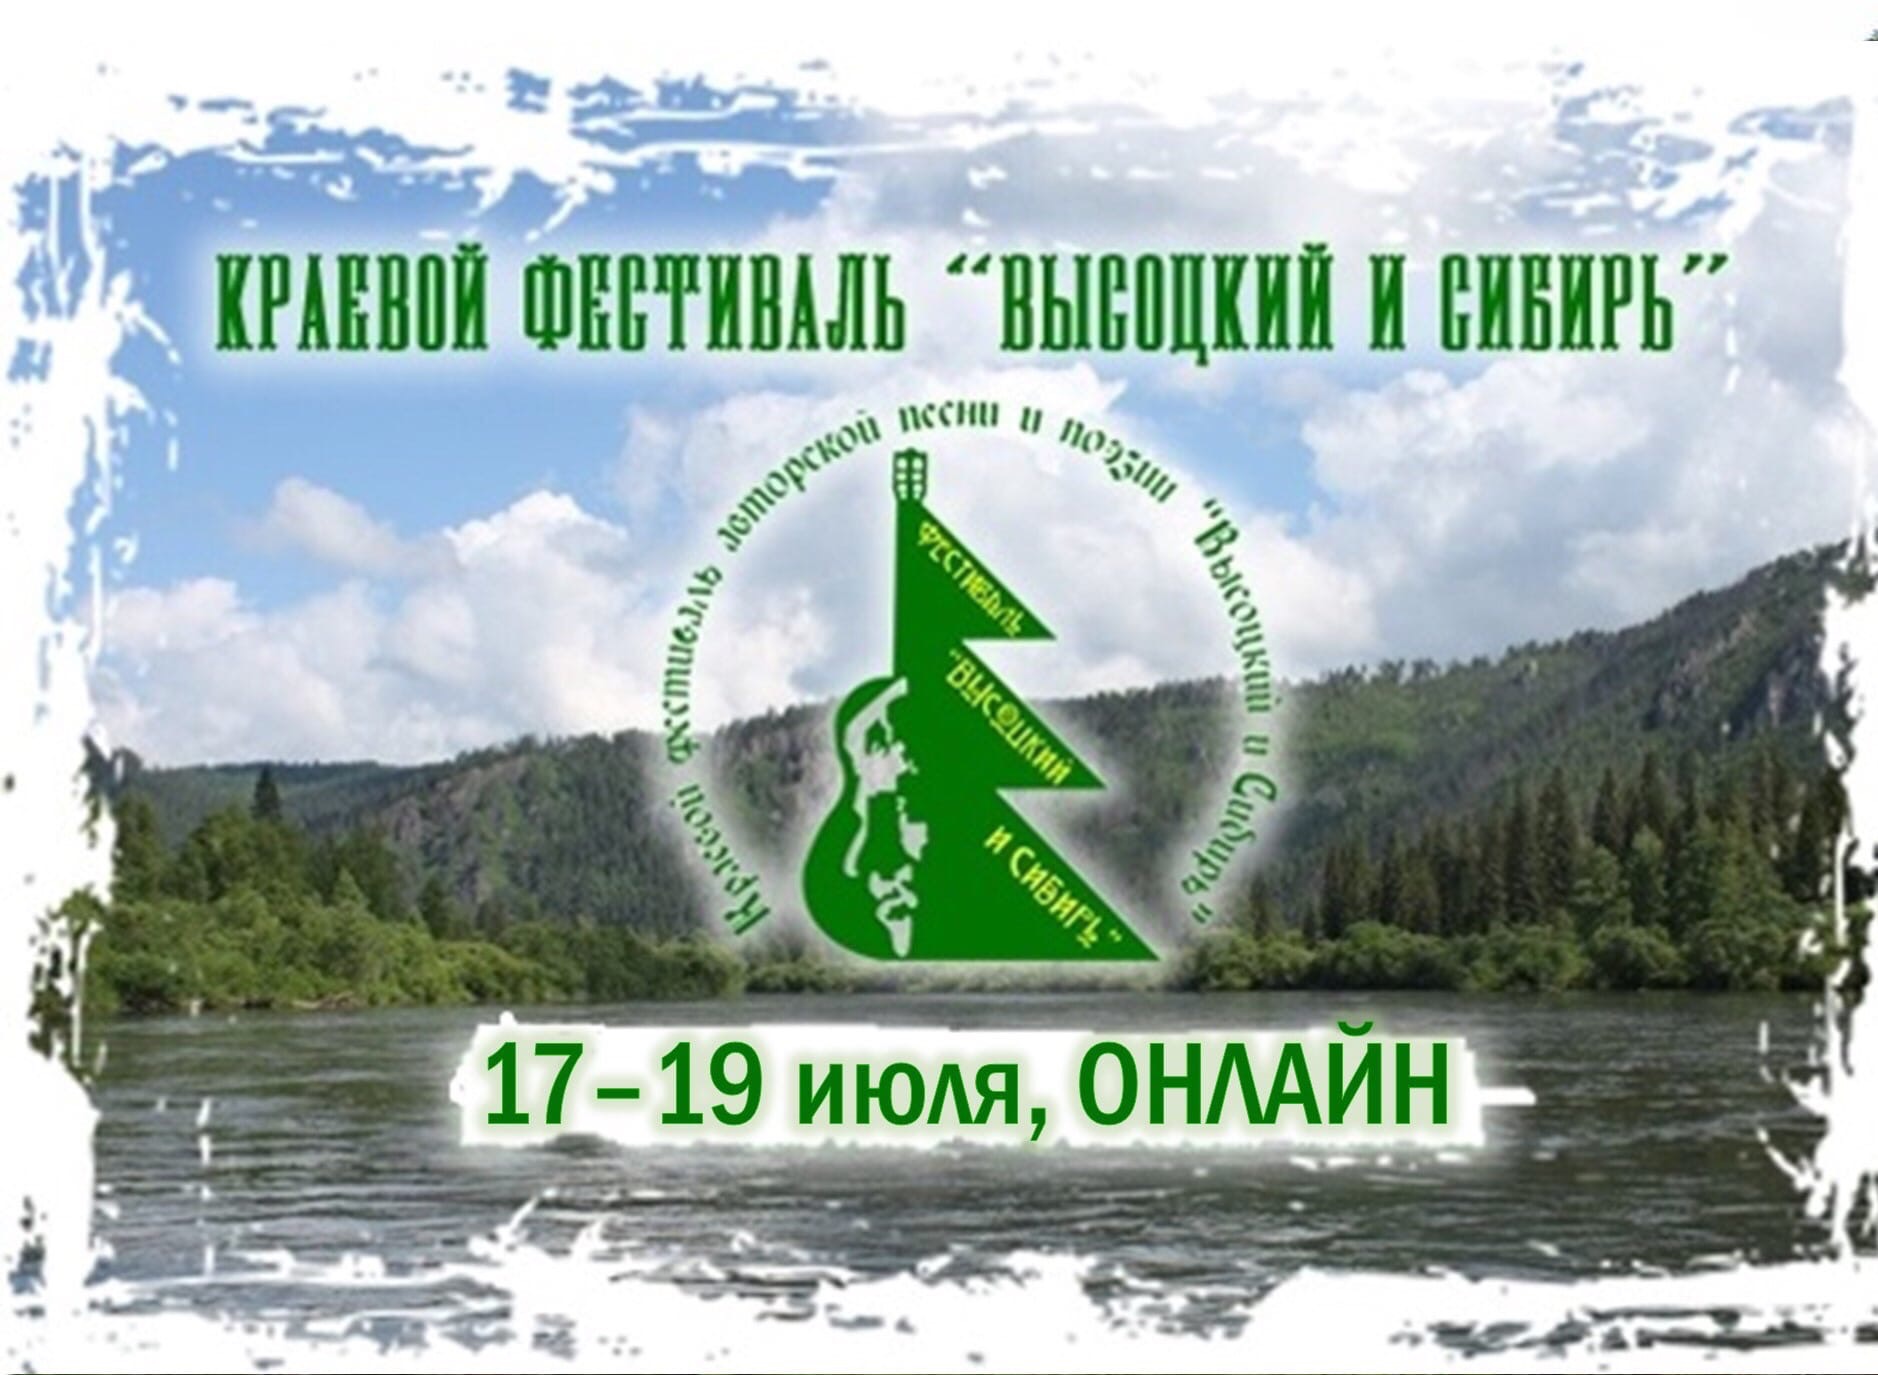 Фестиваль «Высоцкий и Сибирь» пройдет в онлайн-формате